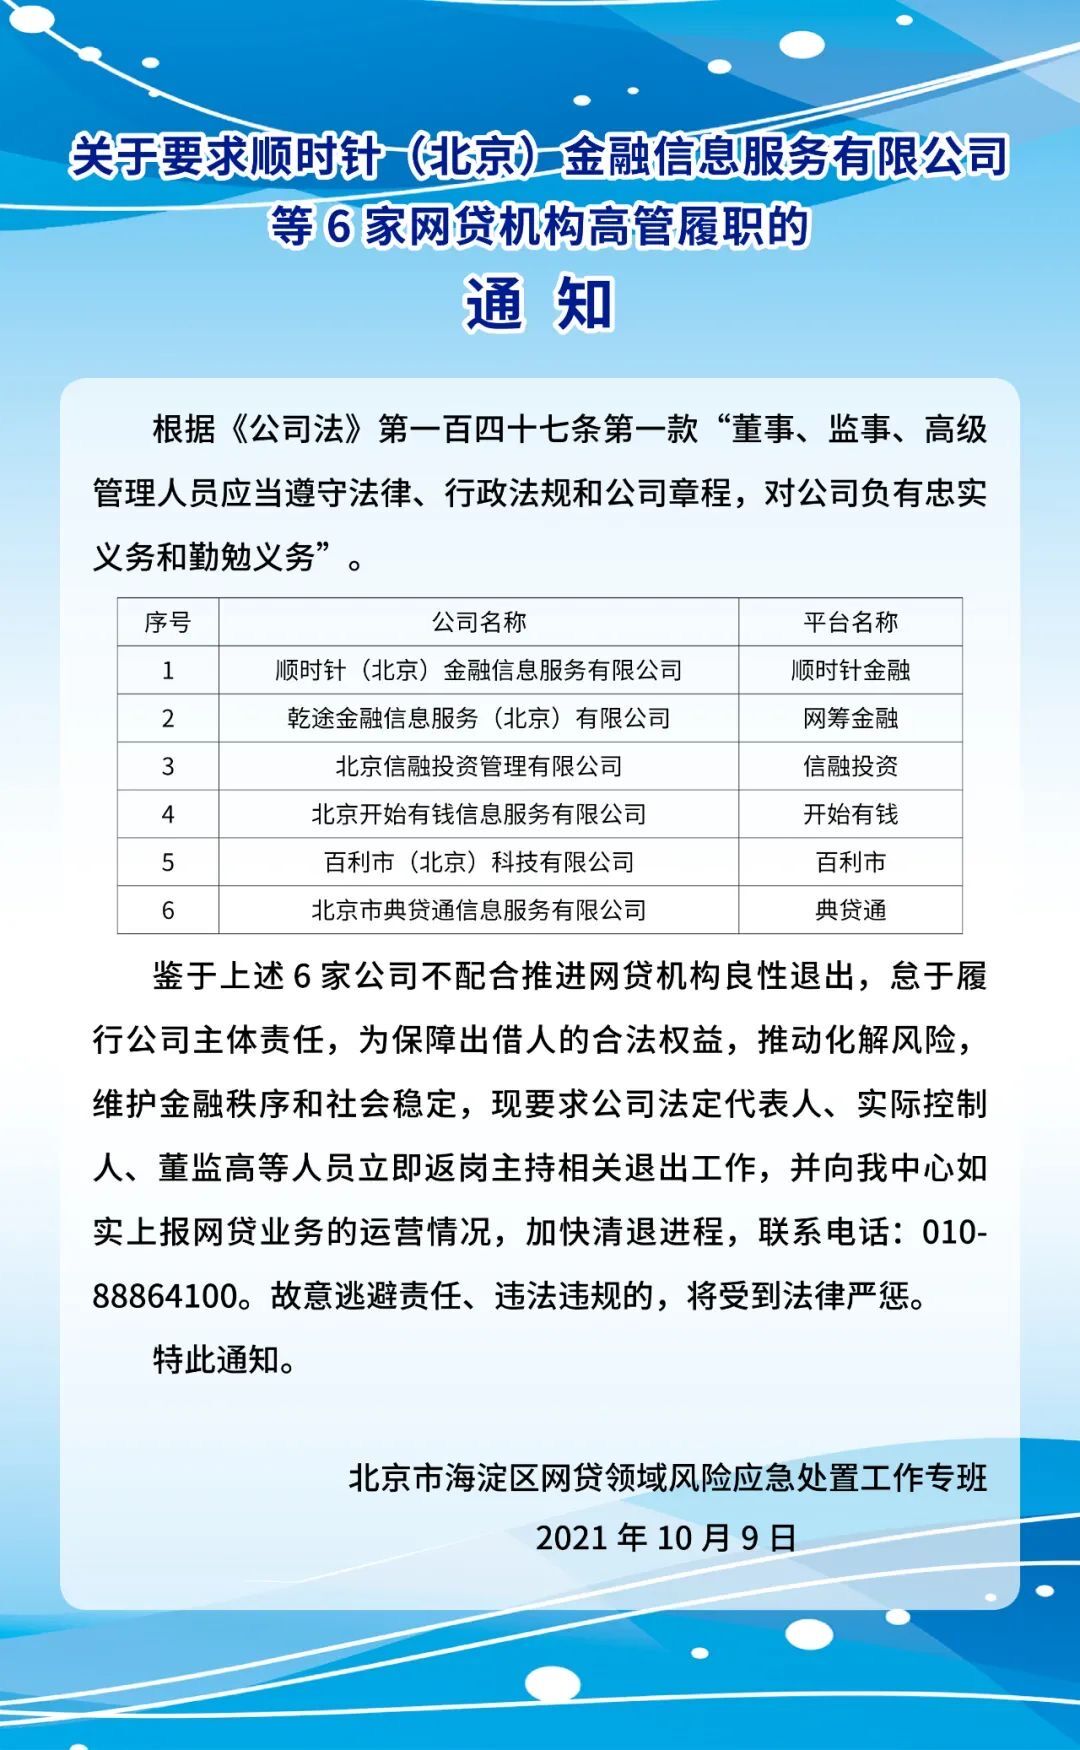 北京网贷机构清退通知